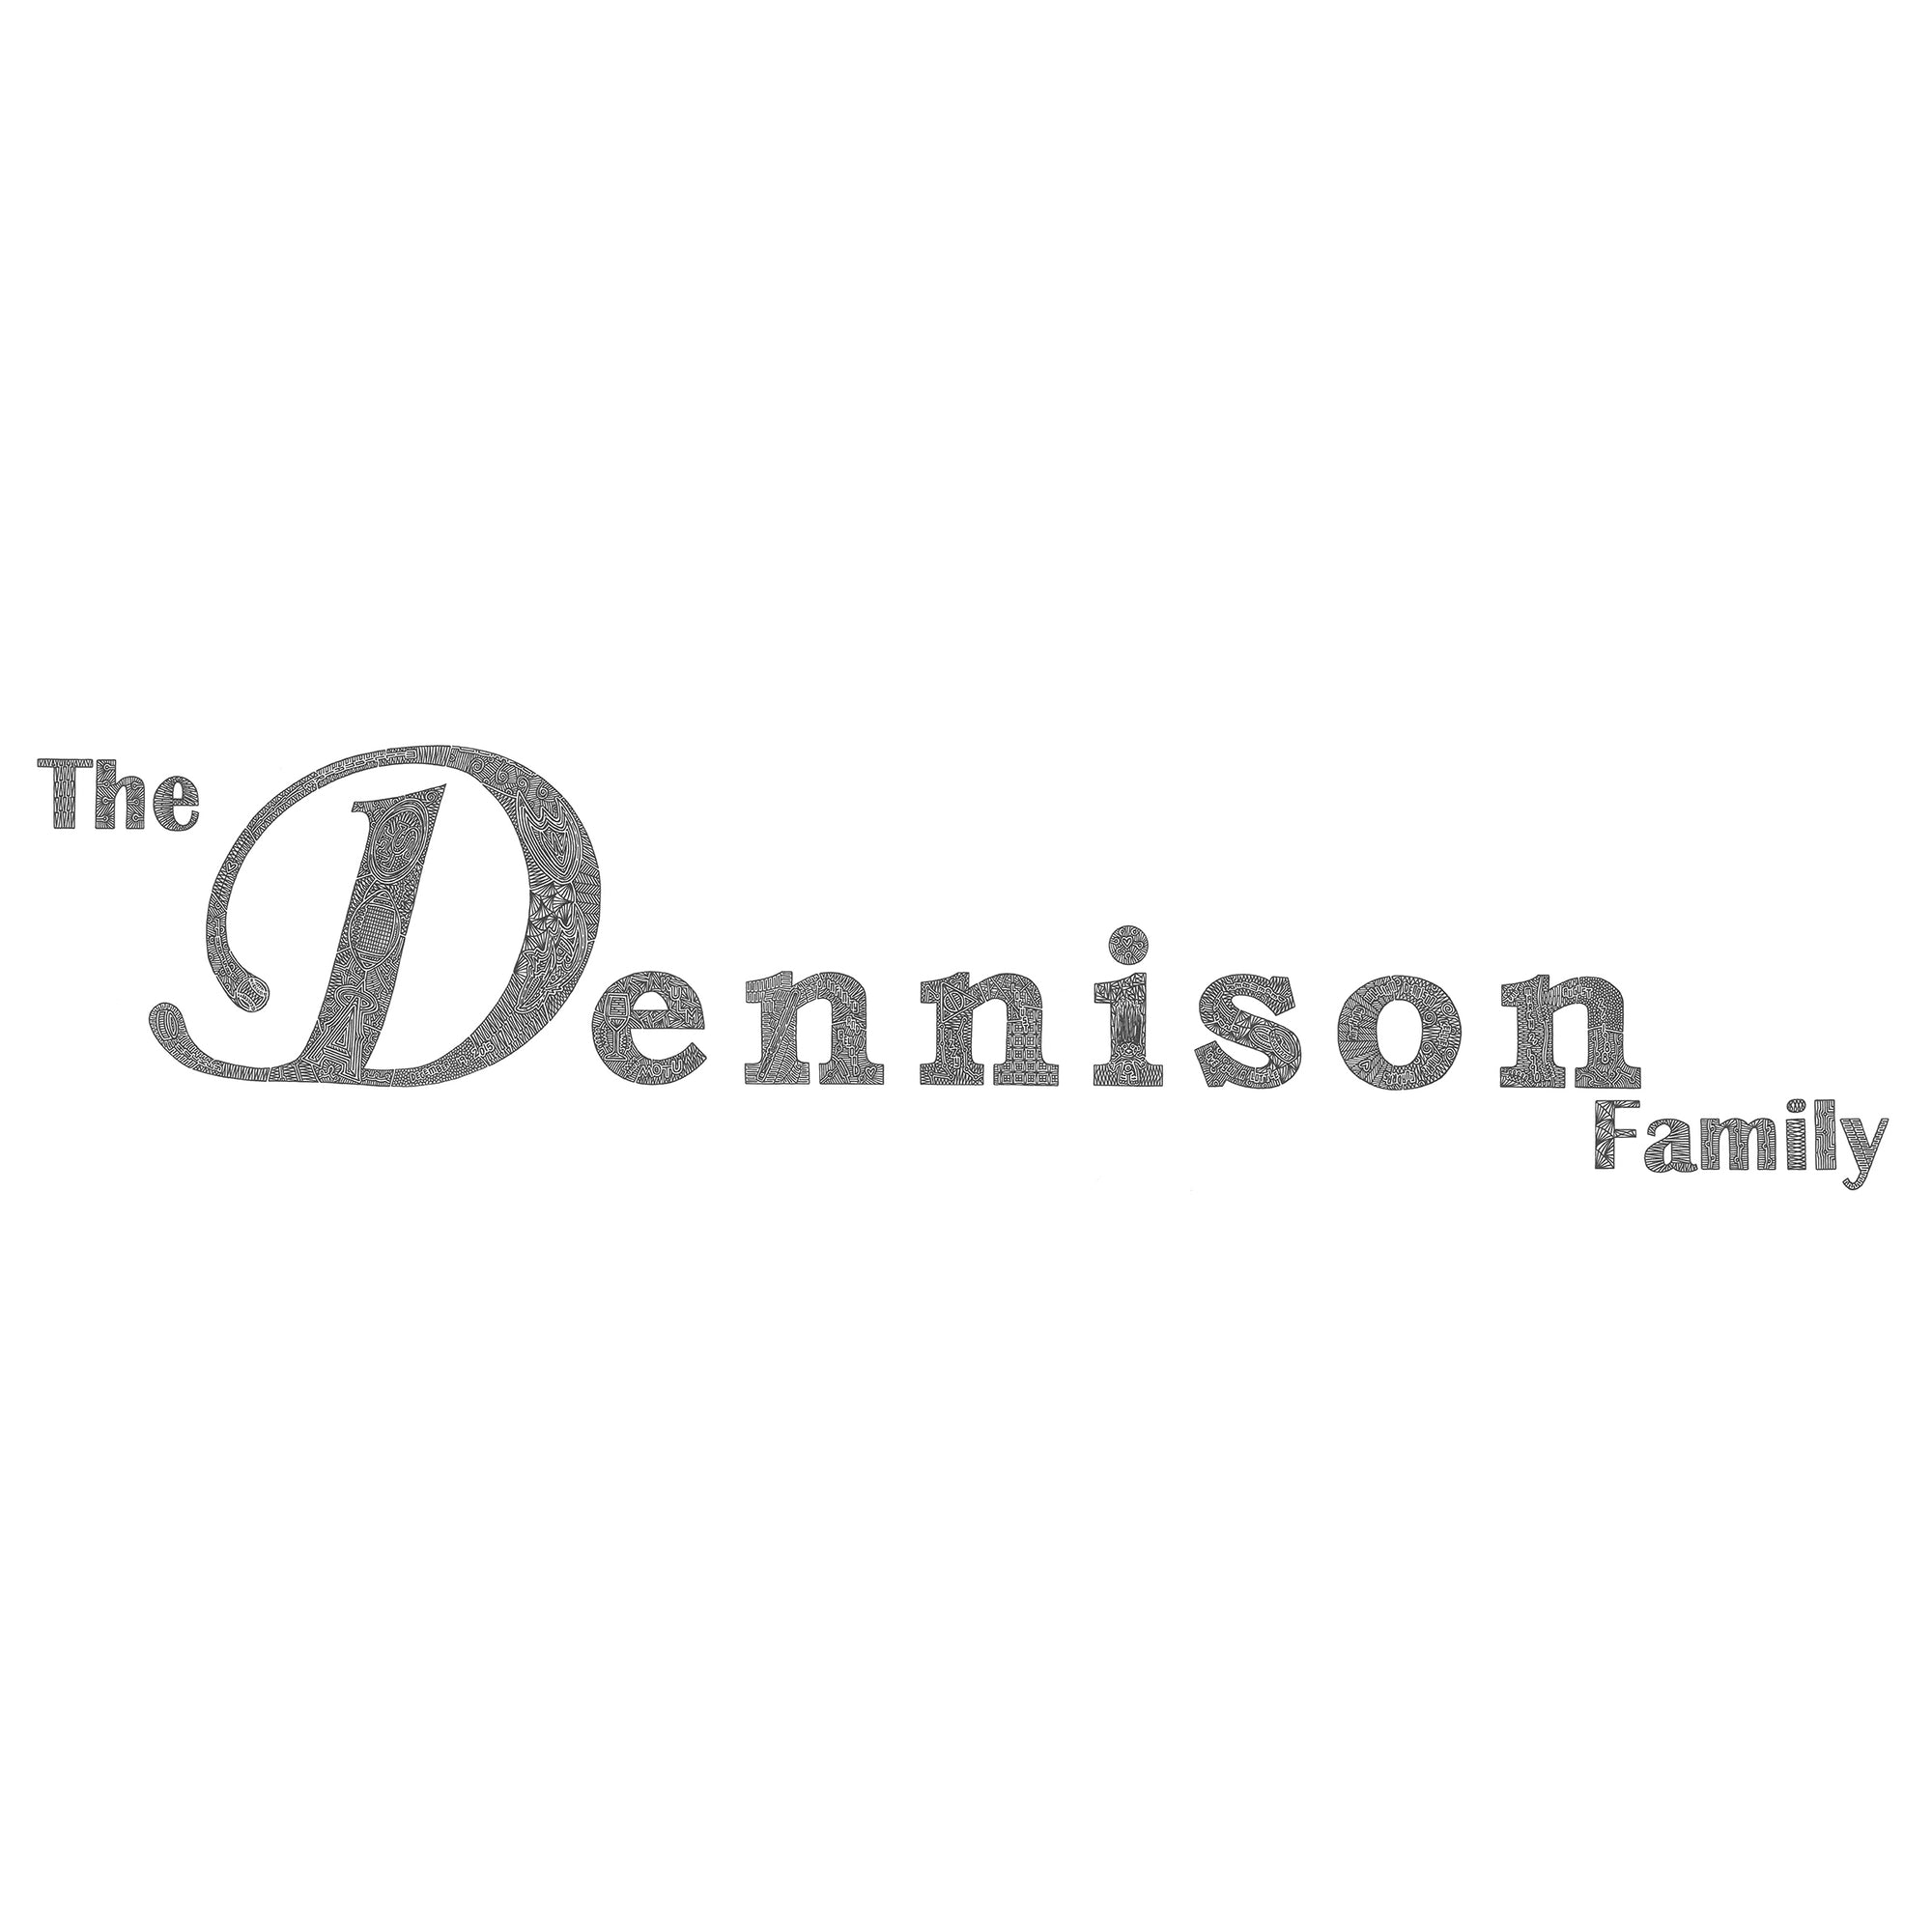 Dennison Family